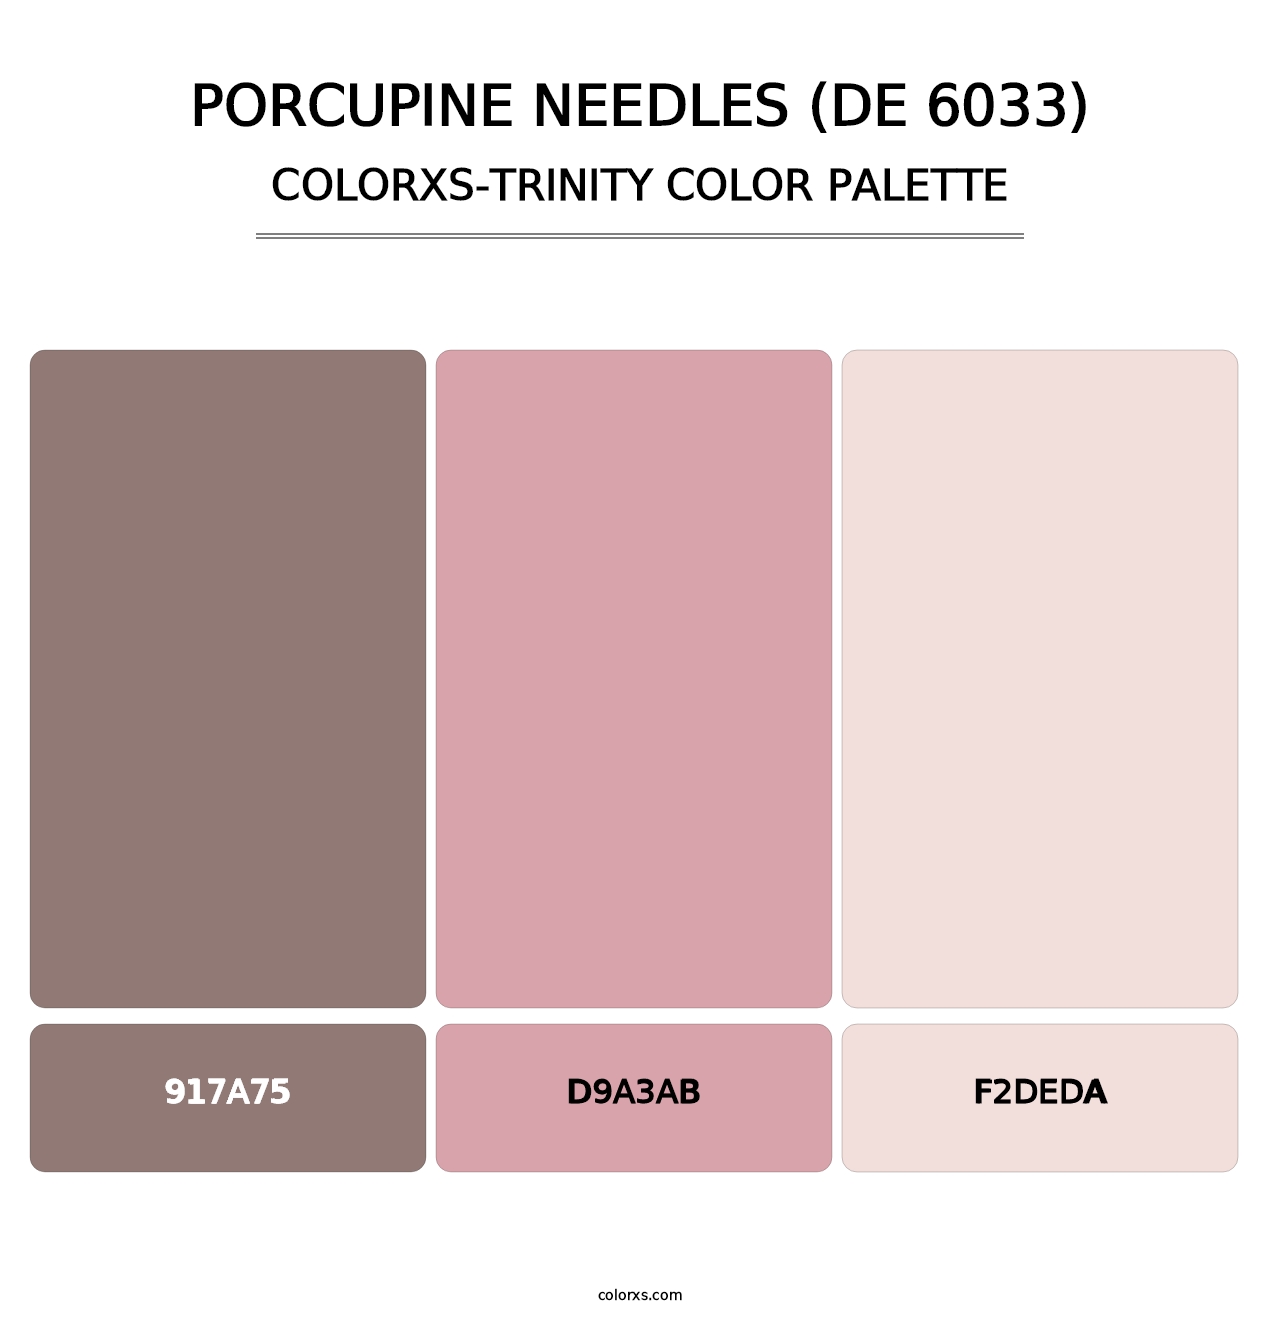 Porcupine Needles (DE 6033) - Colorxs Trinity Palette